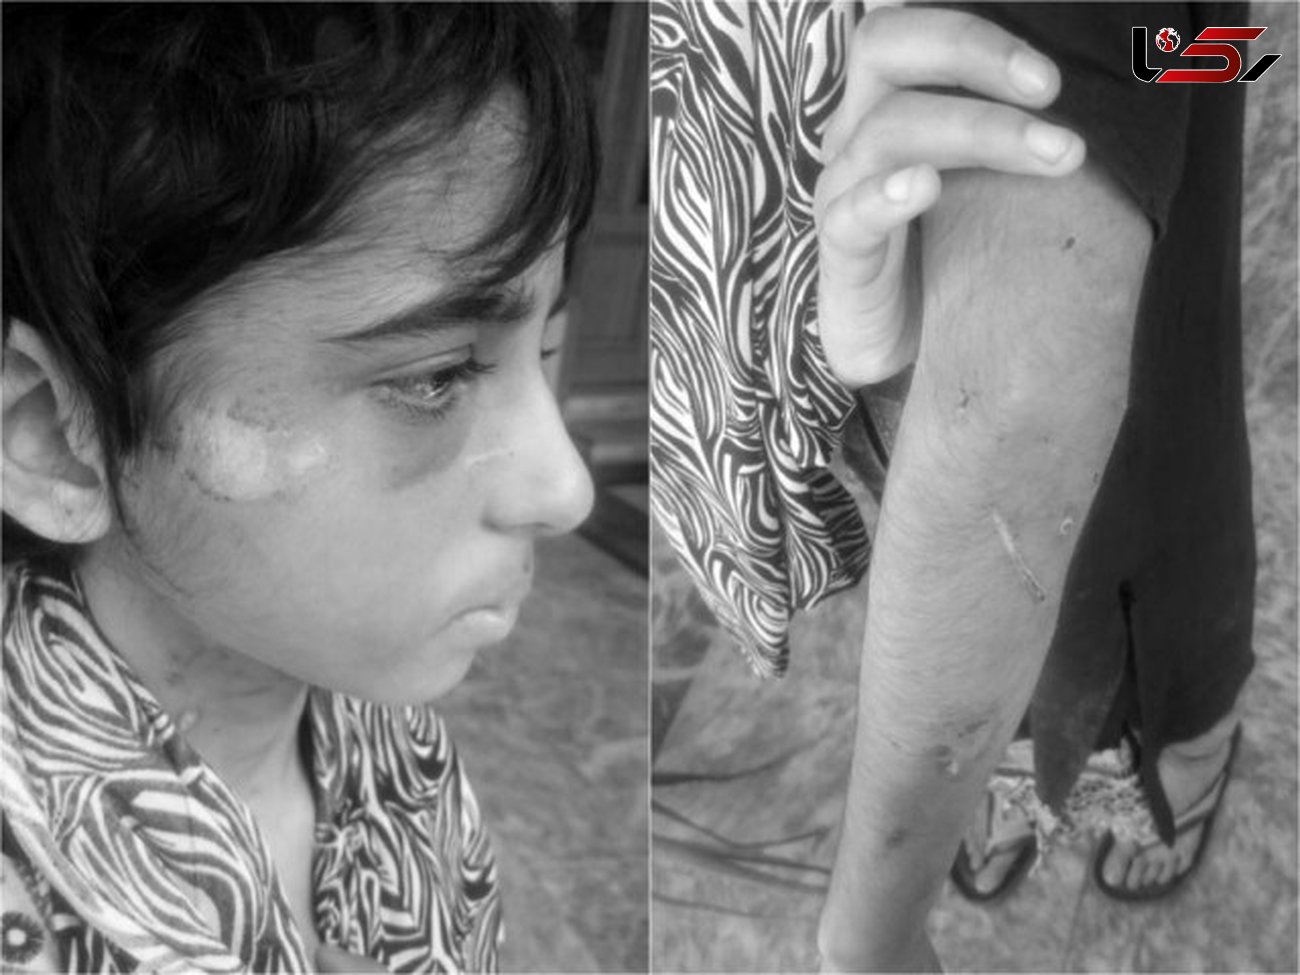 سرنوشت دردناک دختر 11 ساله در خانه جهنمی + عکس